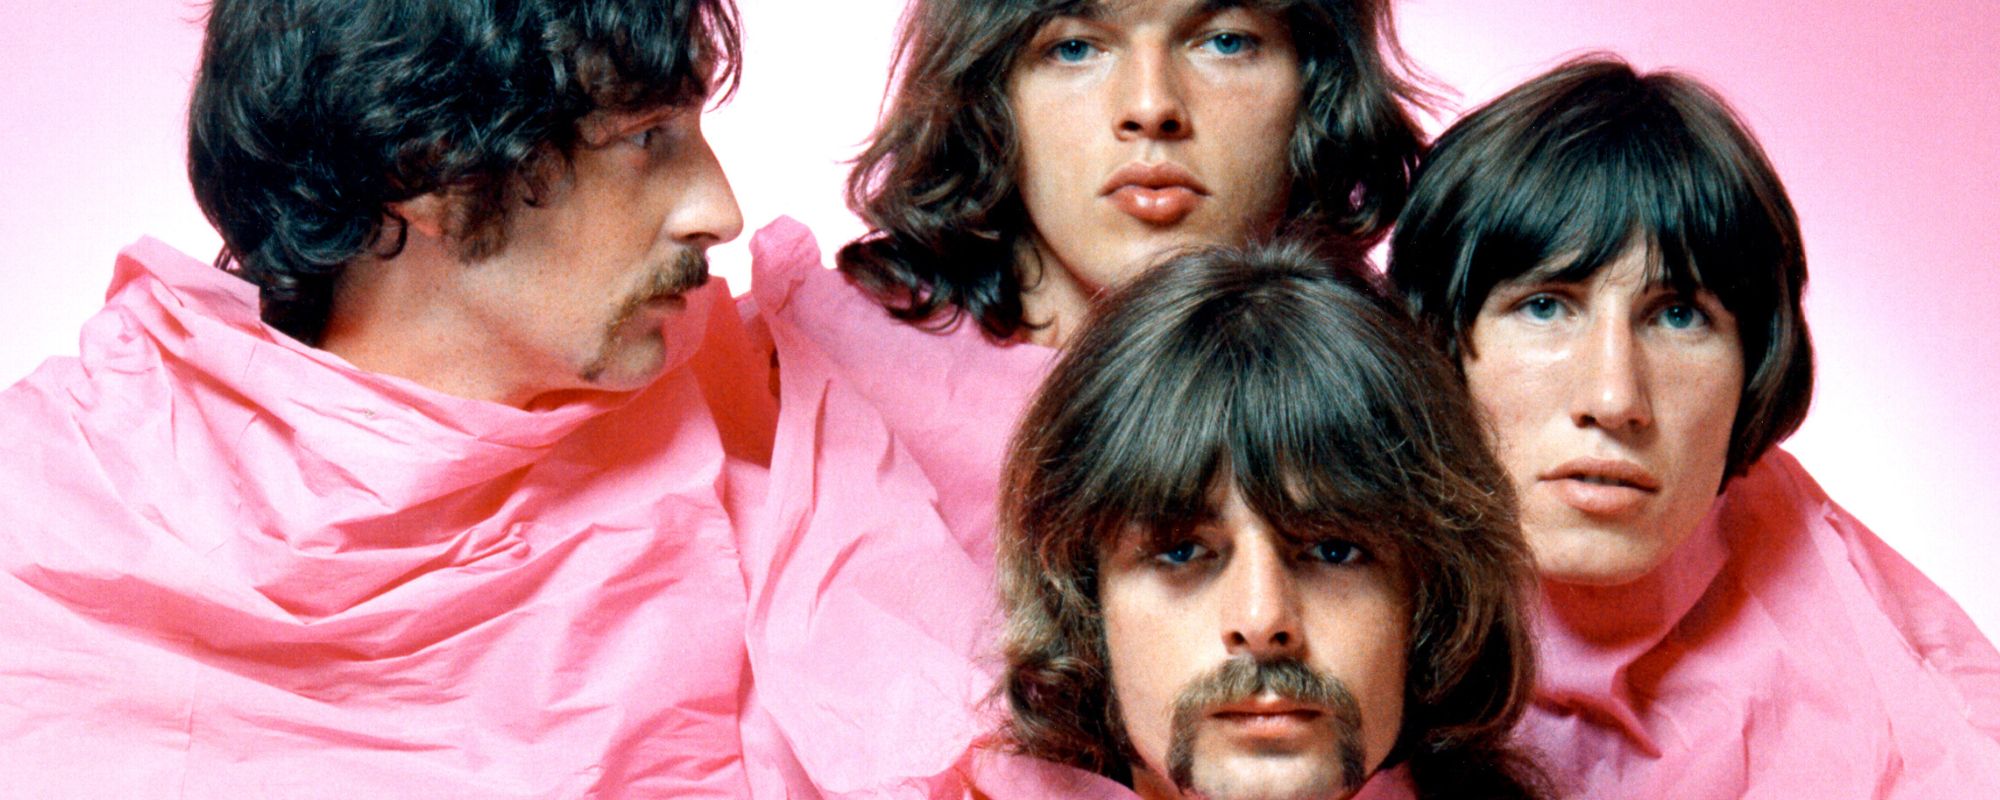 Pink Floyd poses together under pink sheet